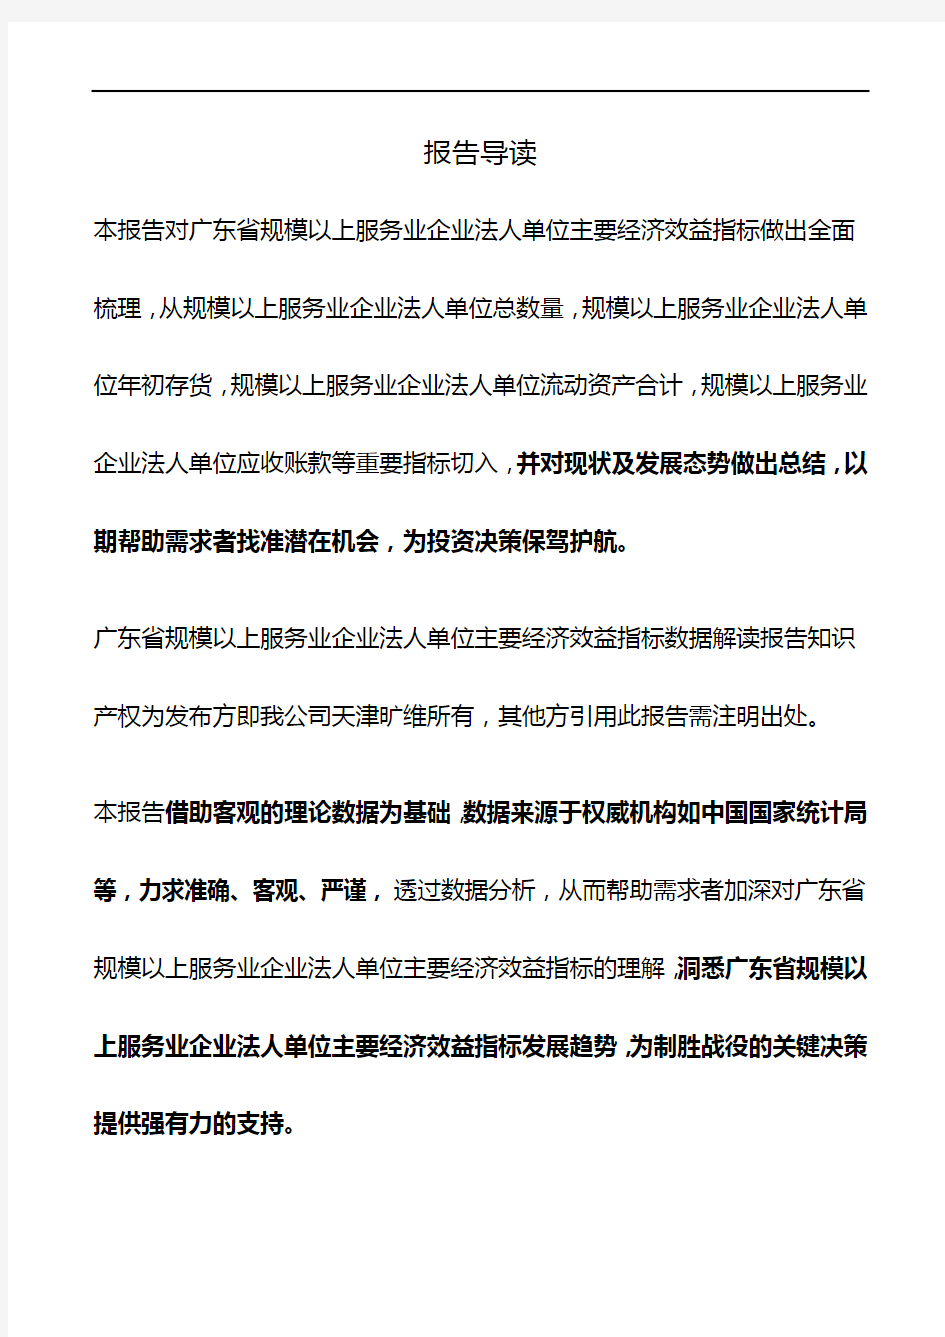 广东省规模以上服务业企业法人单位主要经济效益指标3年数据解读报告2019版